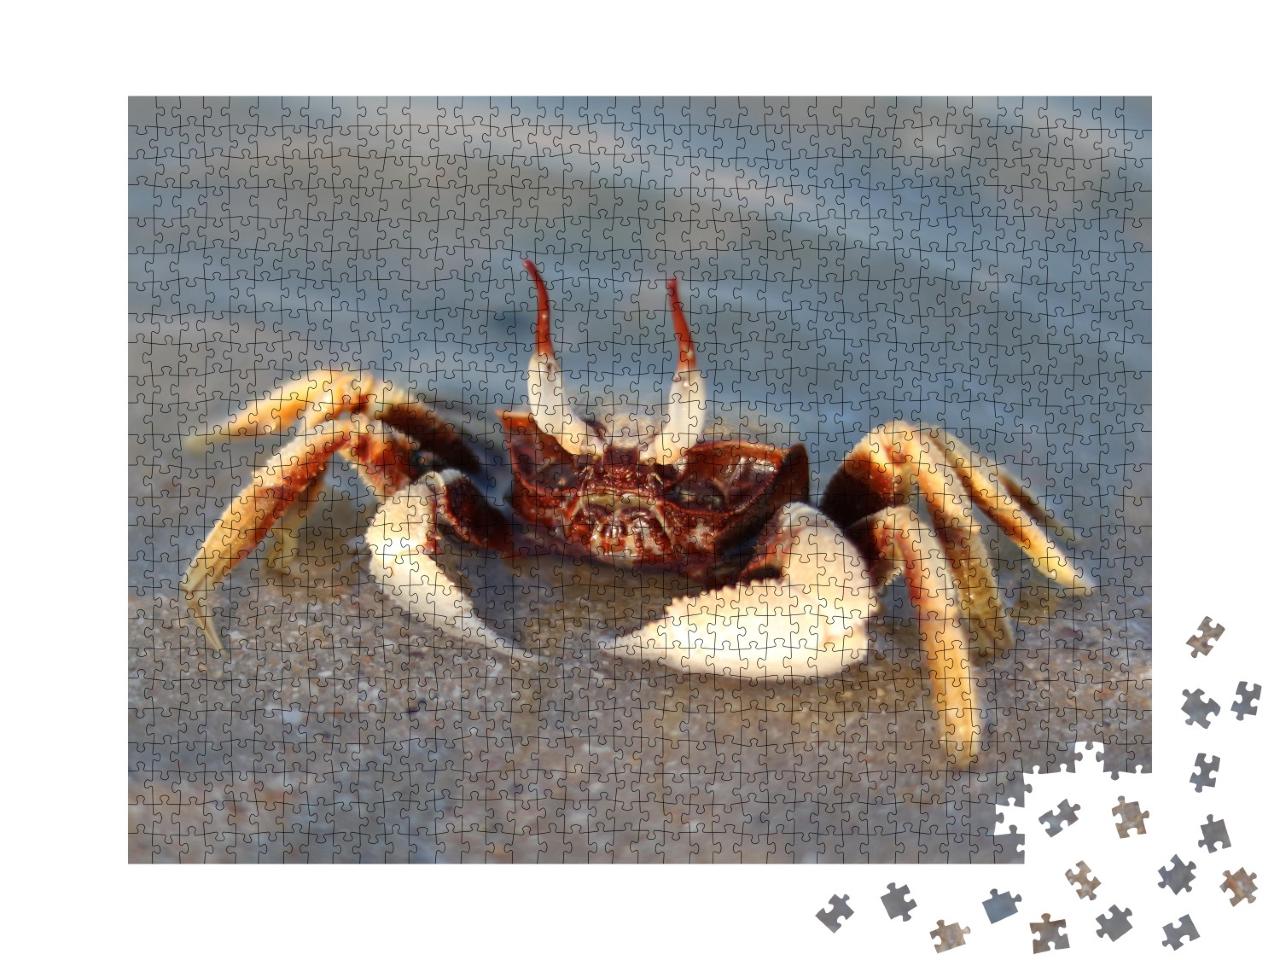 Puzzle de 1000 pièces « Crabe aux yeux fantômes dans la mer »